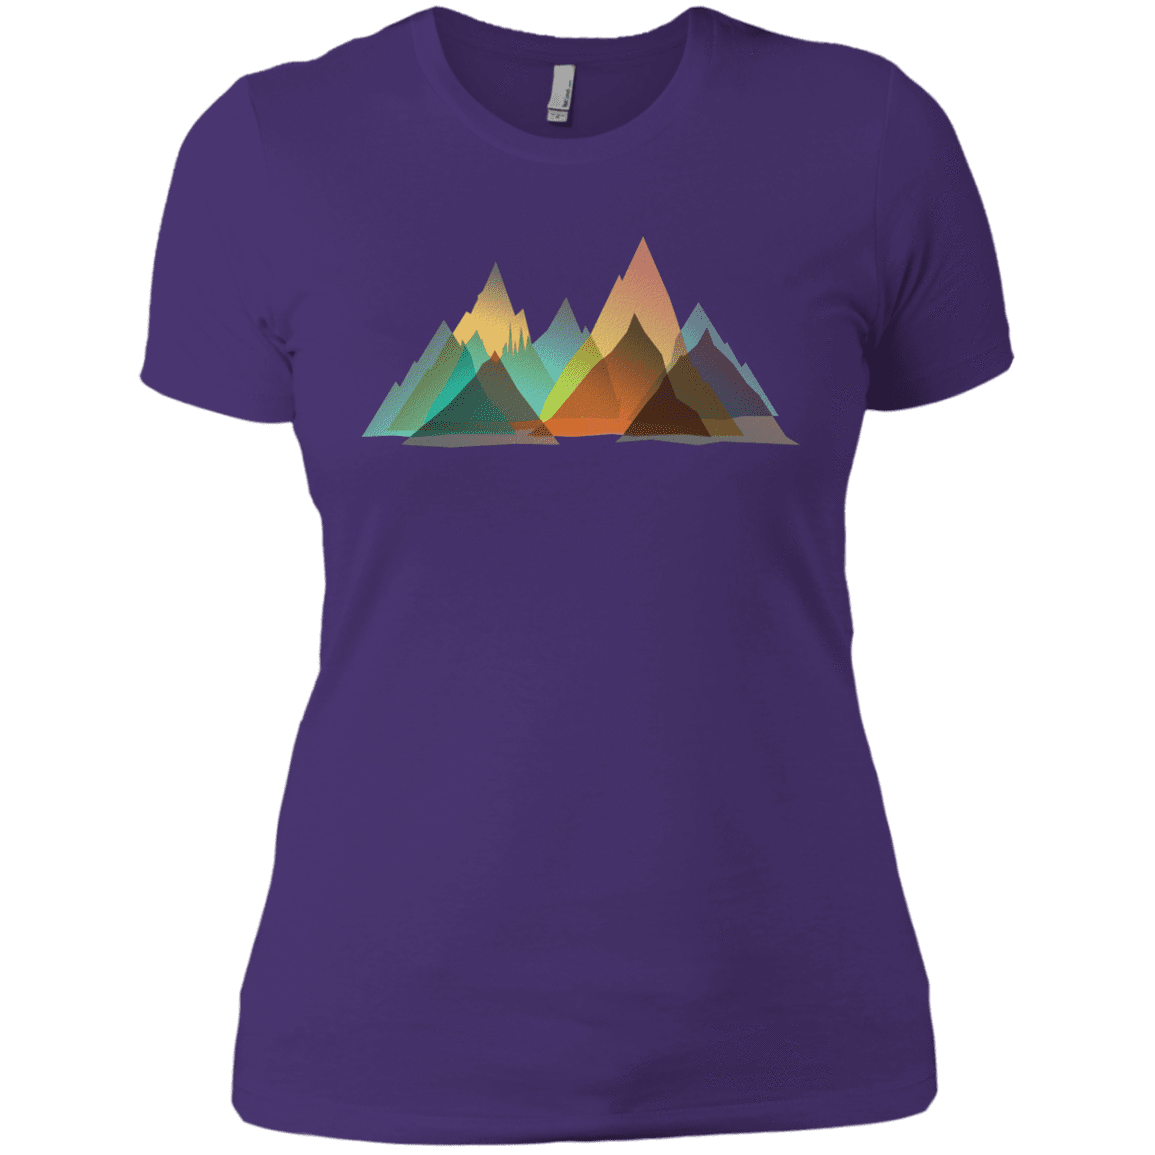 T-Shirts Purple Rush/ / X-Small Abstract Range Women's Premium T-Shirt